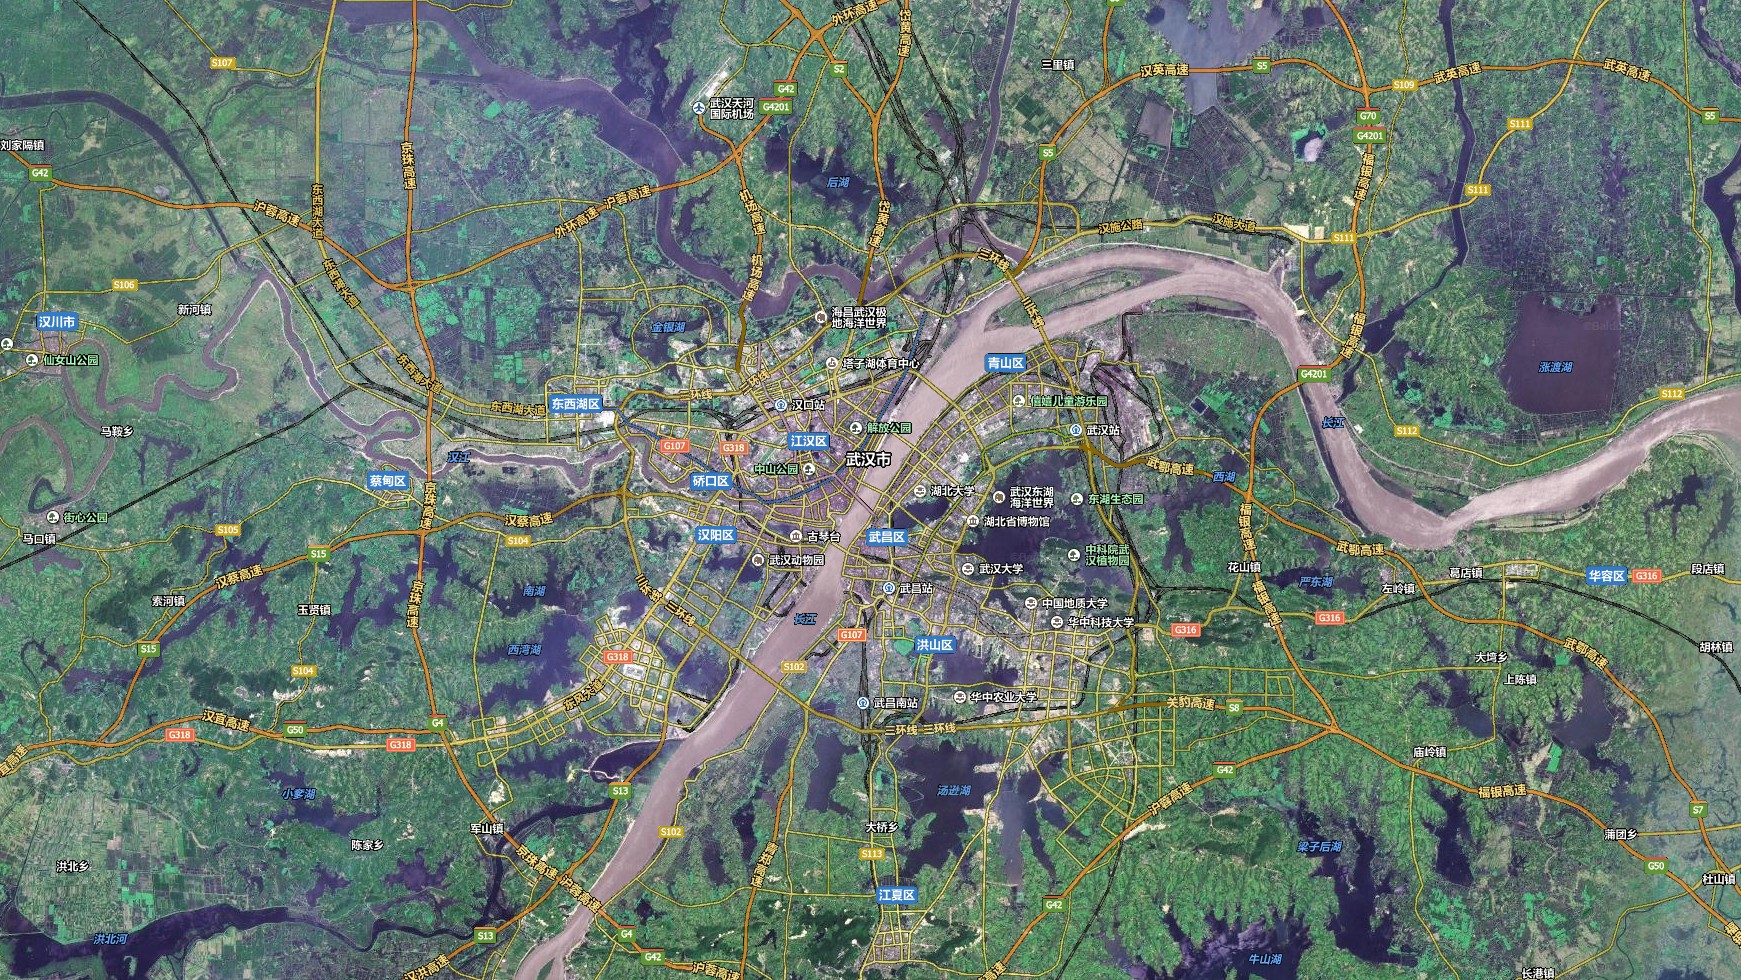 必游景点  重要景区  旅游线路图  景点分布图  卫星地图  城市概貌图片